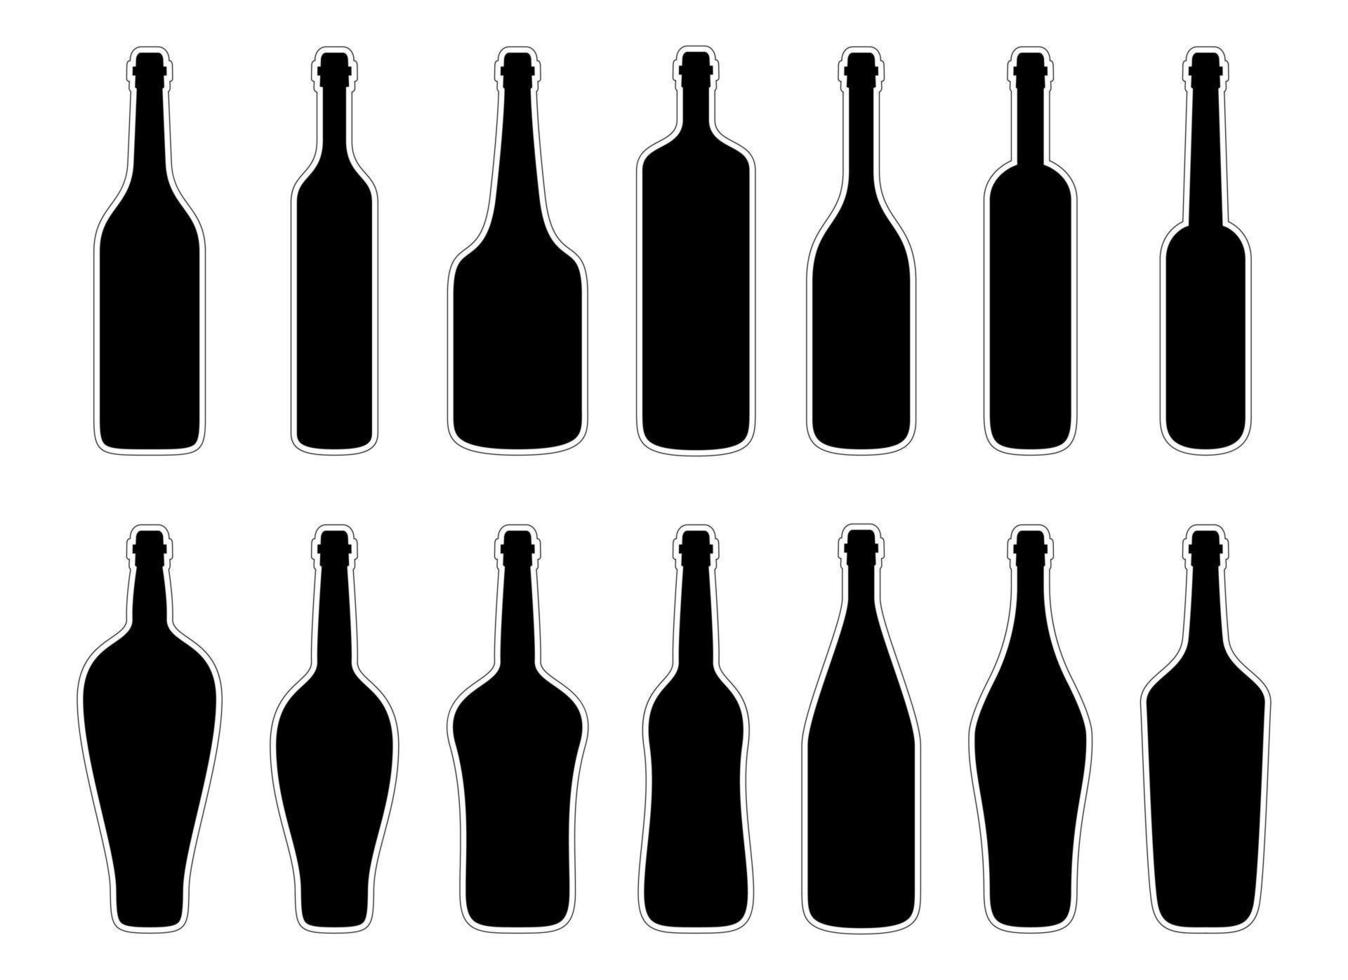 Glass bottle vector design illustration isolated on white background